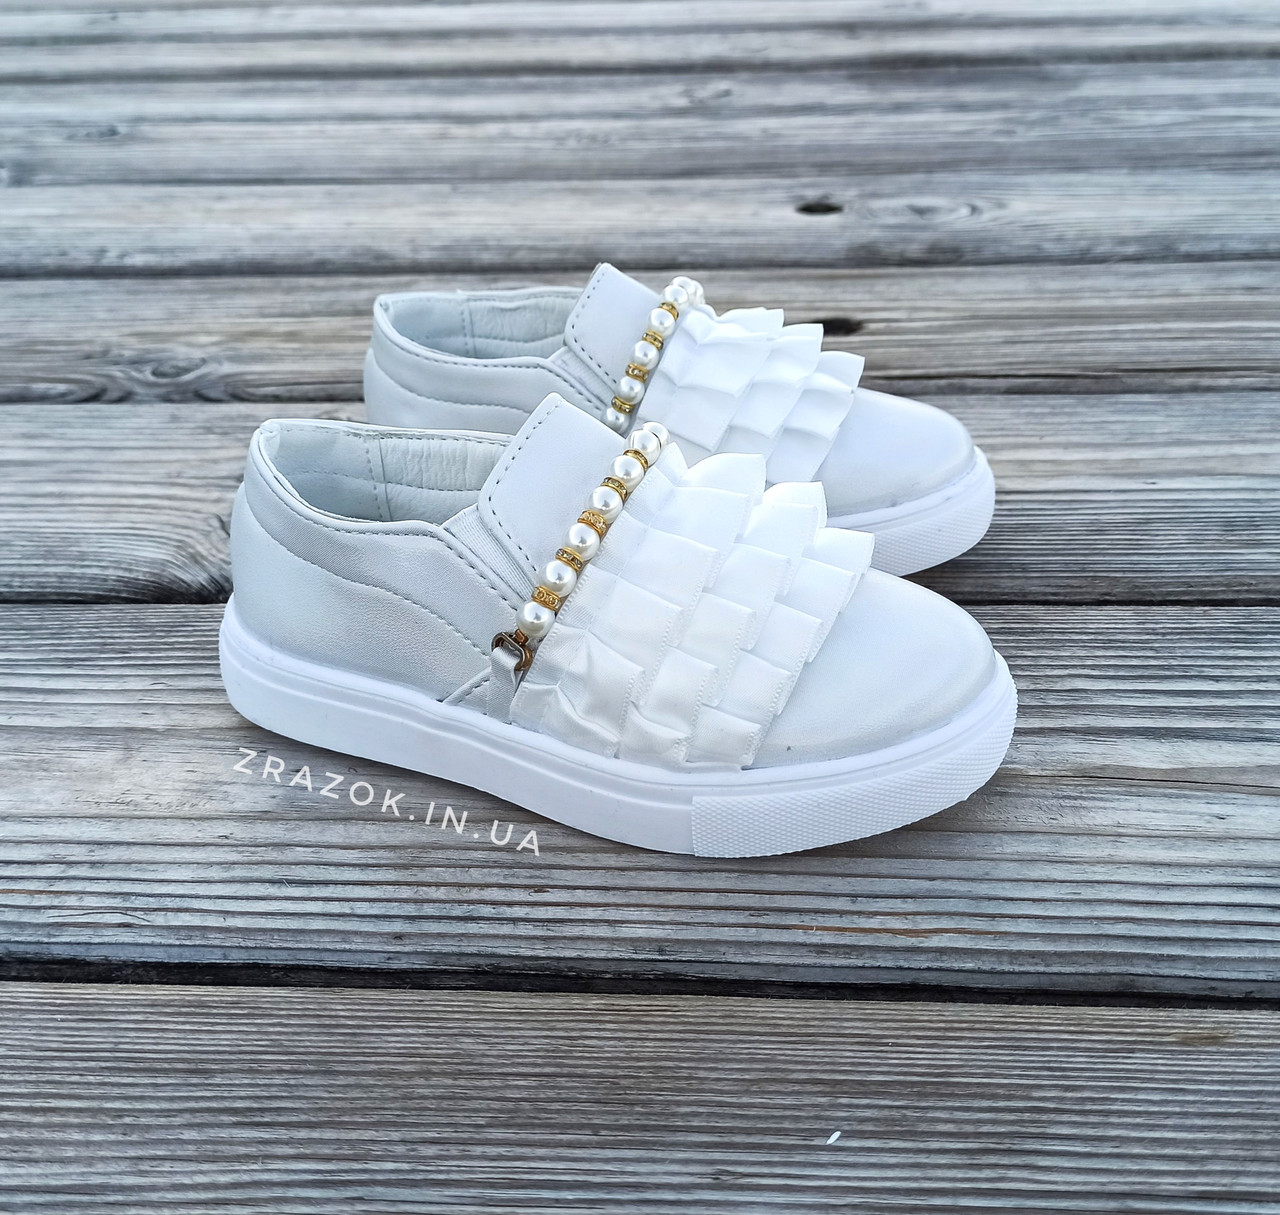 Білі туфлі дитячого кеди на дівчинку в школу взуття для шкільного взуття біла